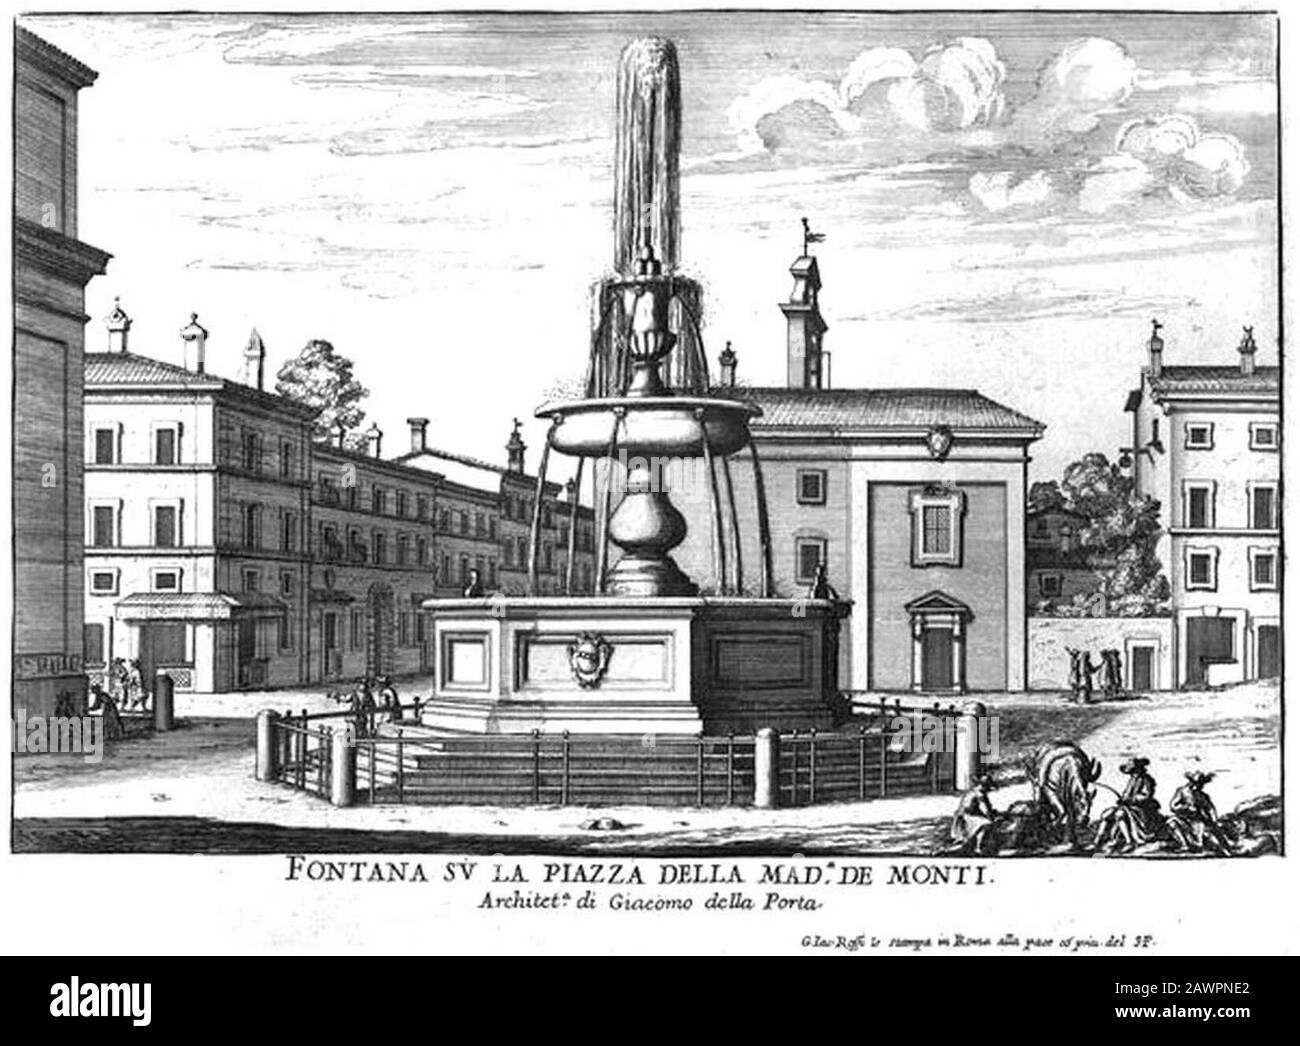 Fontana su la Piazza della Madonna de Monti par Giovanni Battista Falda (17 cents). Banque D'Images